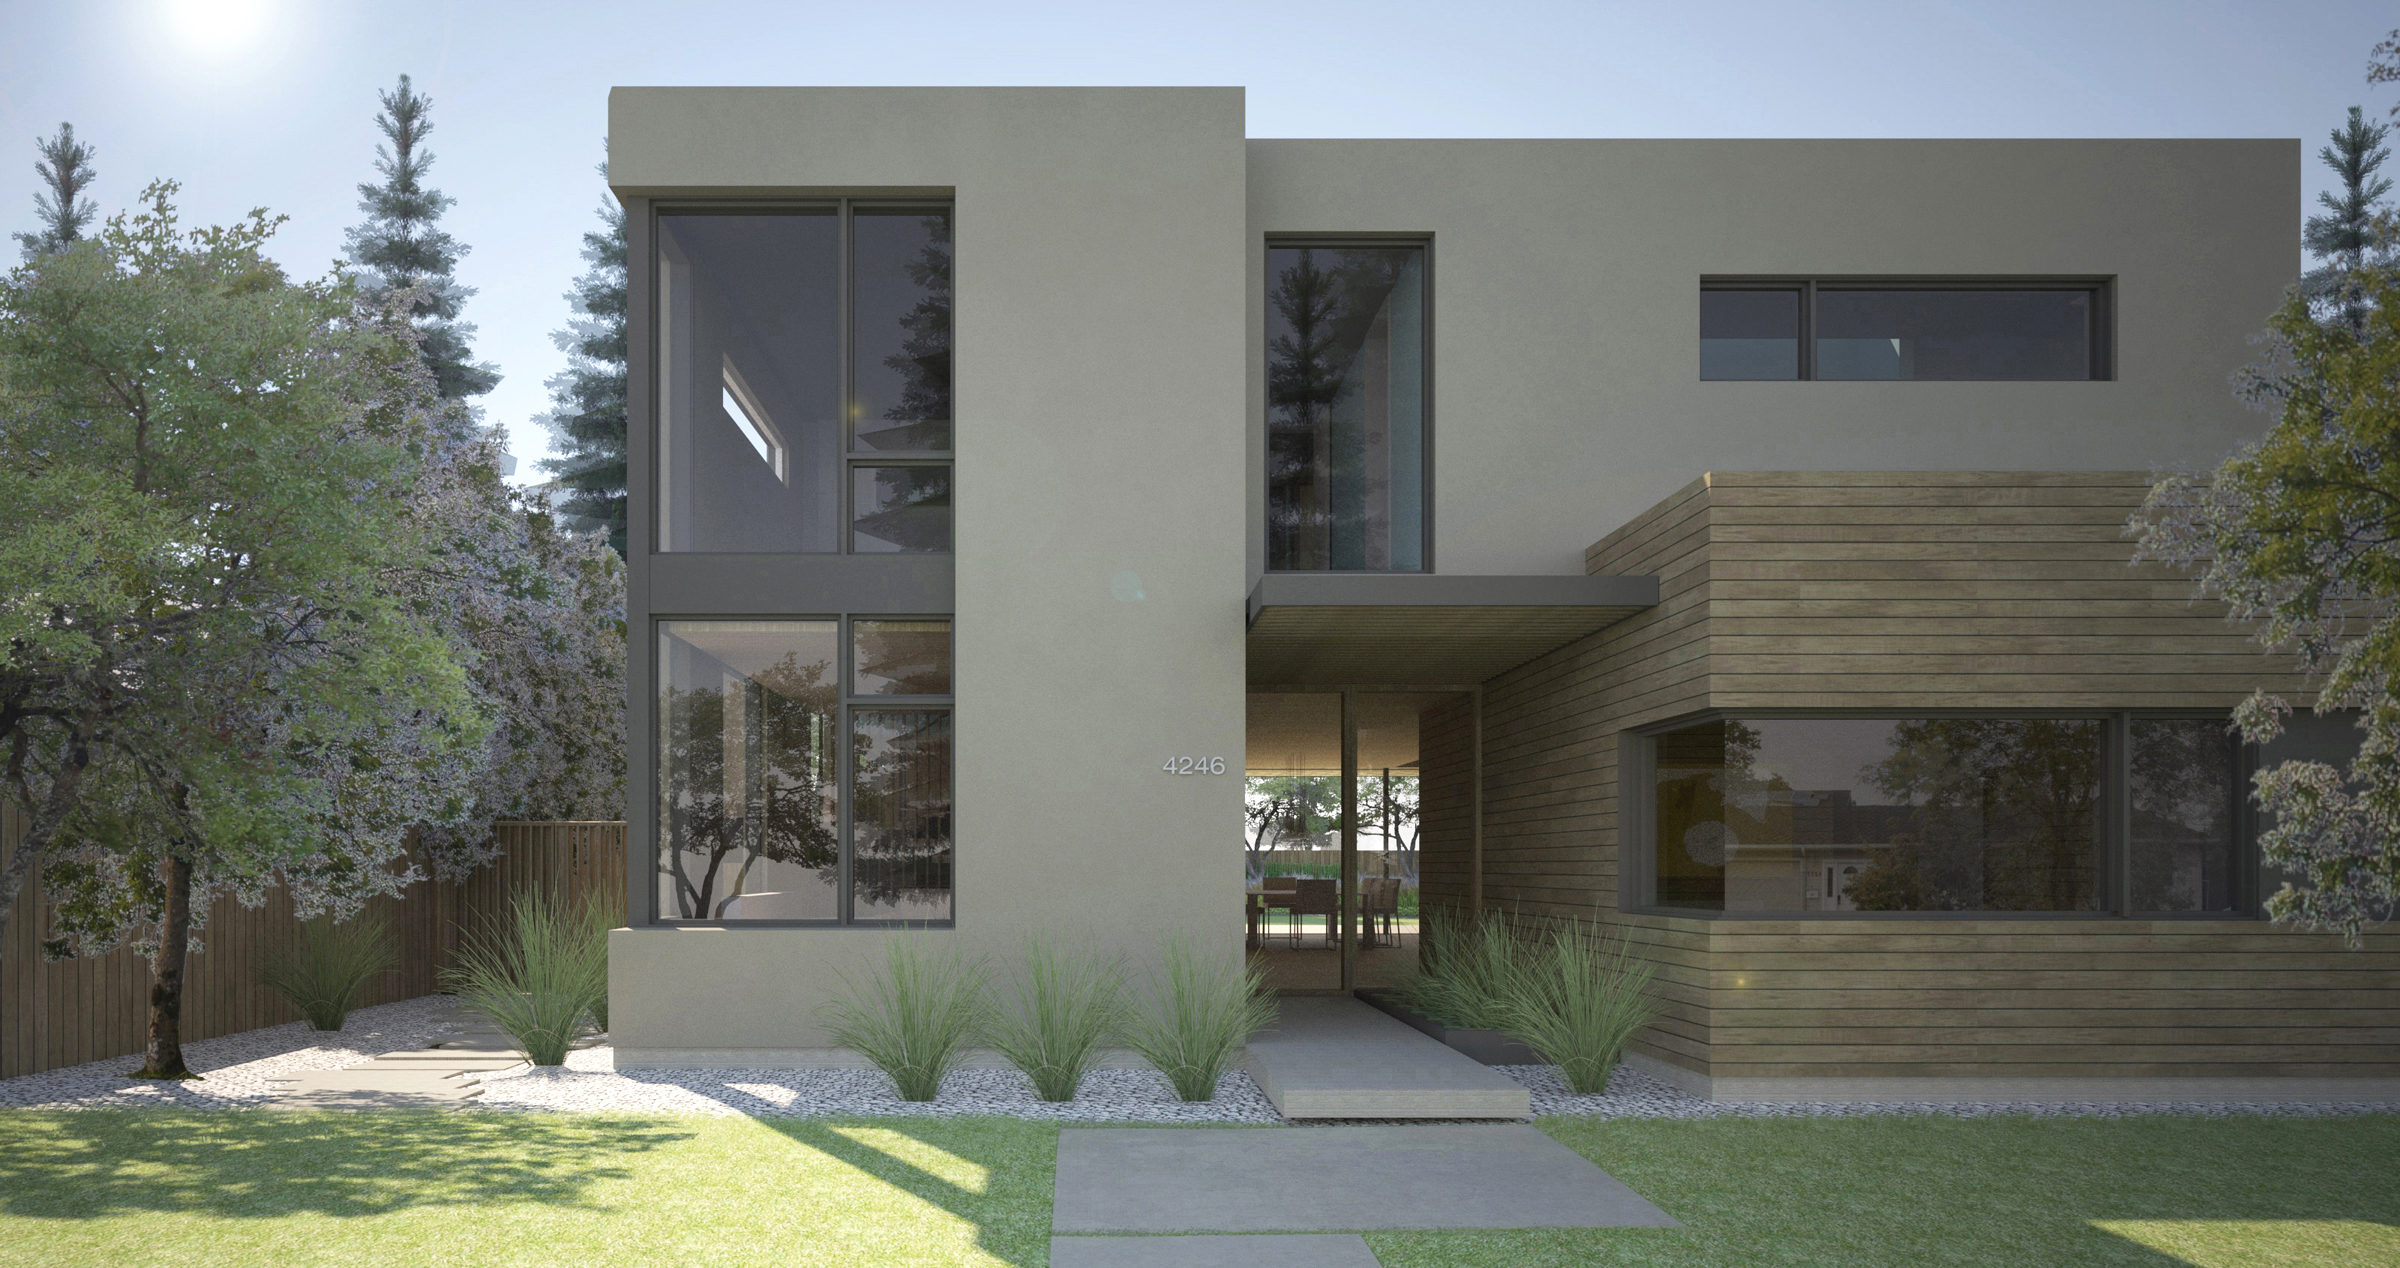 Palo Alto home by LNAI Architecture